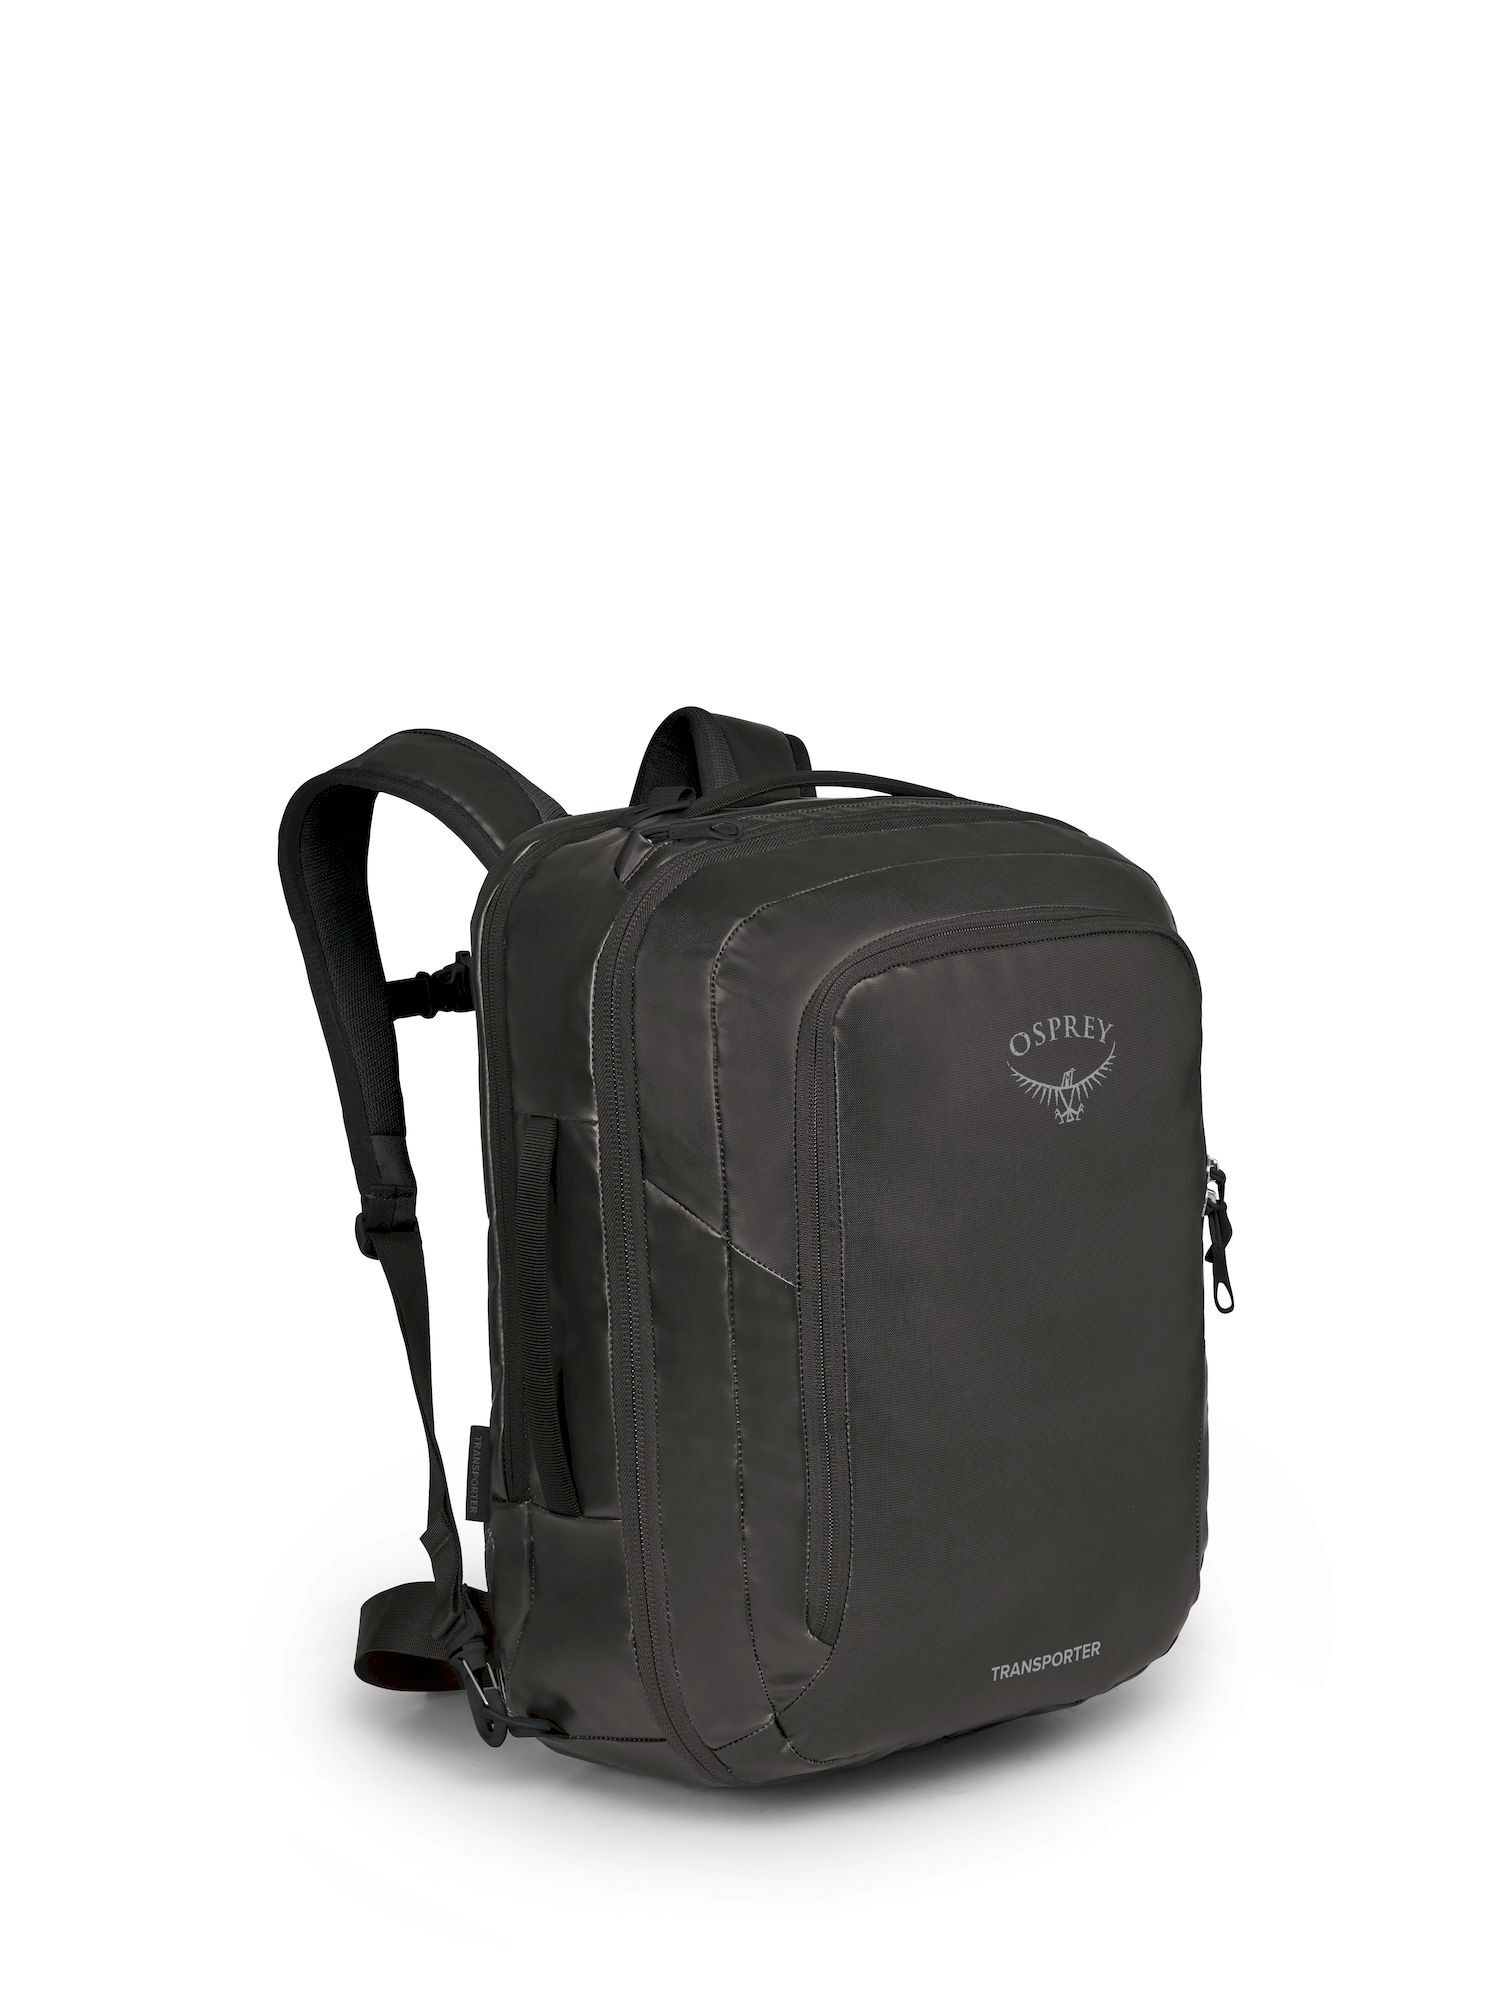 Osprey Transporter Global Carry-On Bag - Sac de voyage | Hardloop